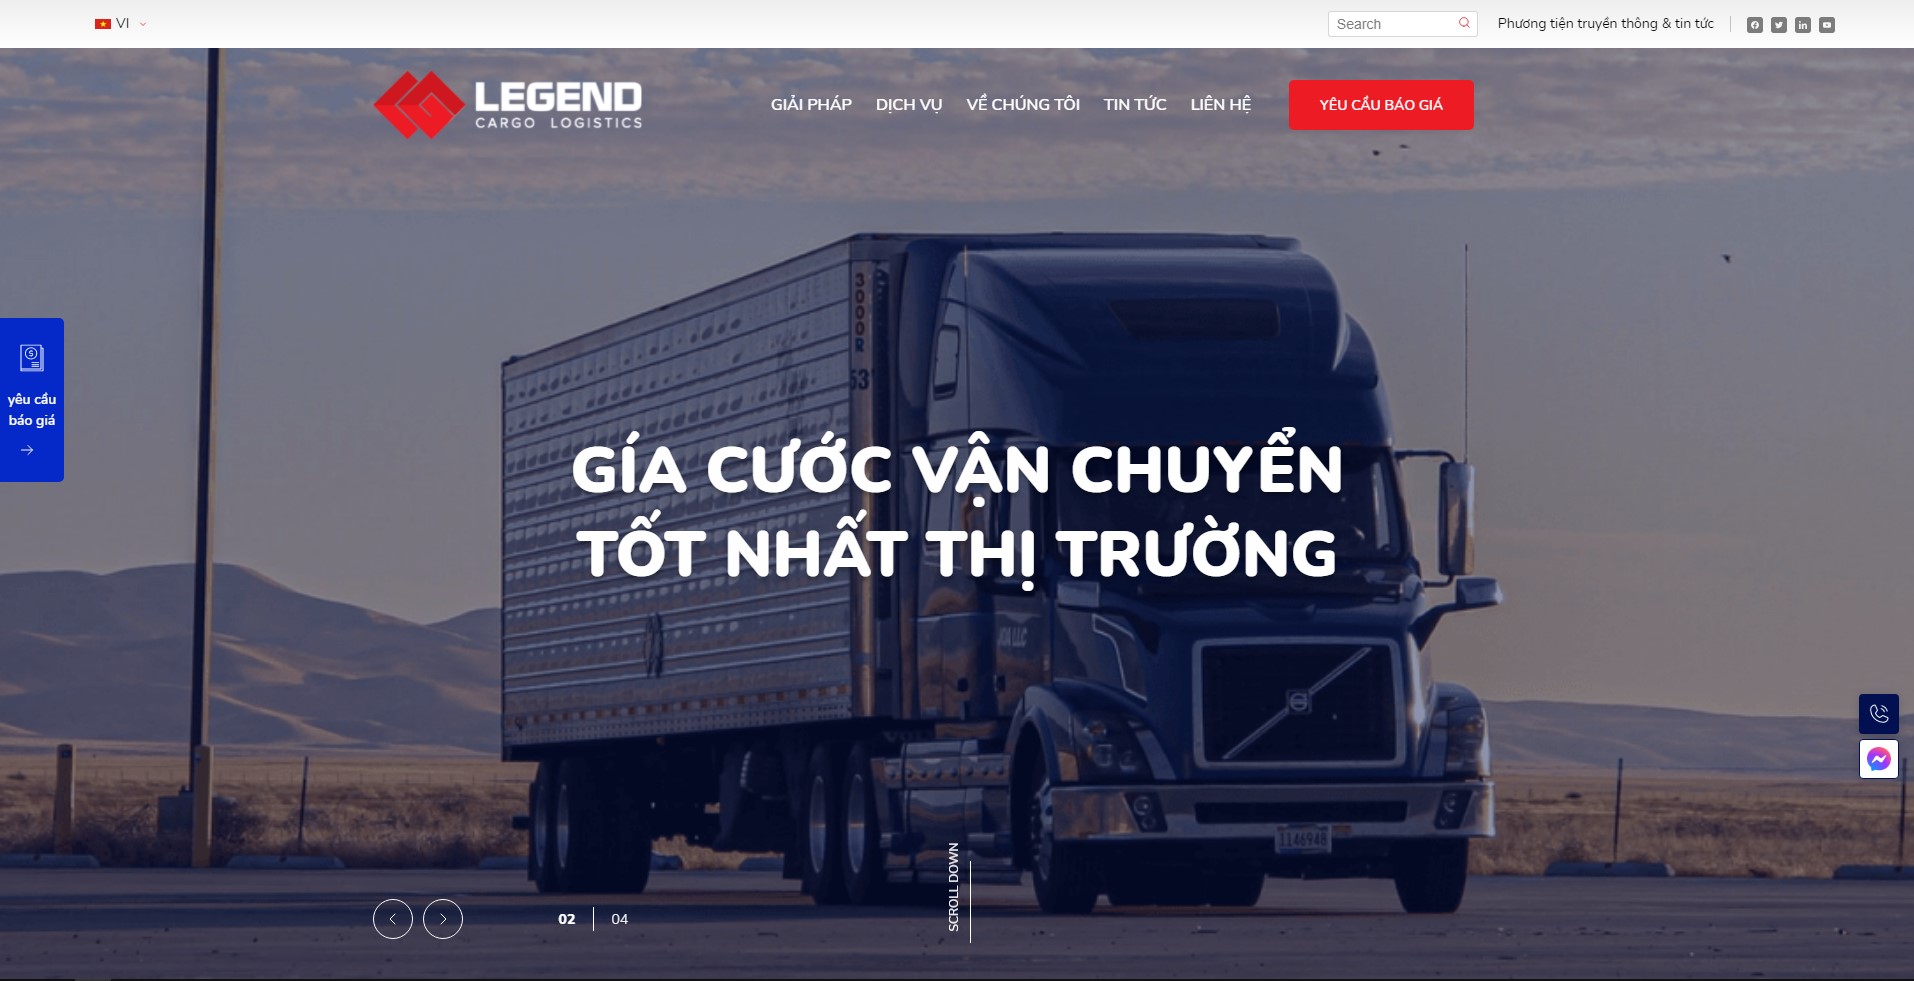 Legend Cargo Logistics - Giao hàng nhanh, dịch vụ ship vận chuyển hàng chuyên nghiệp